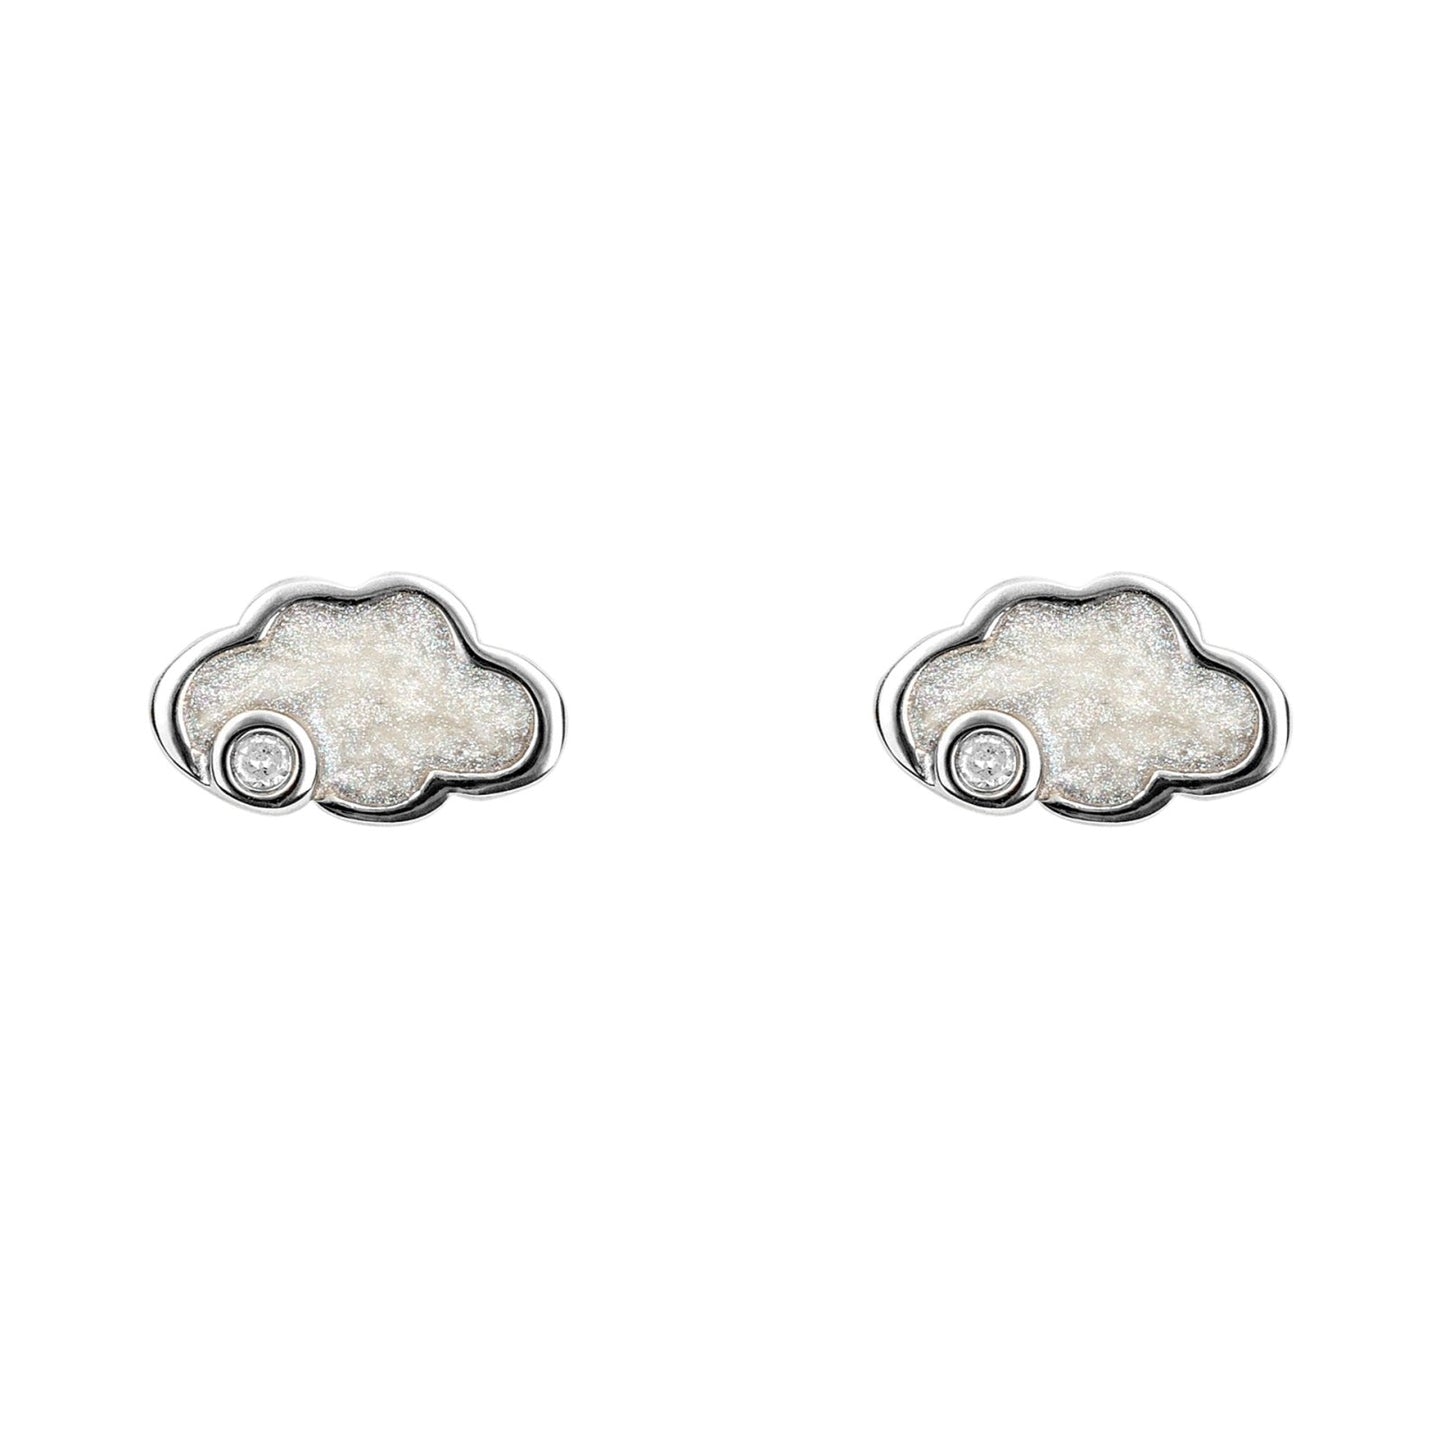 Silver Enamel Diamond Cloud Children's Earrings